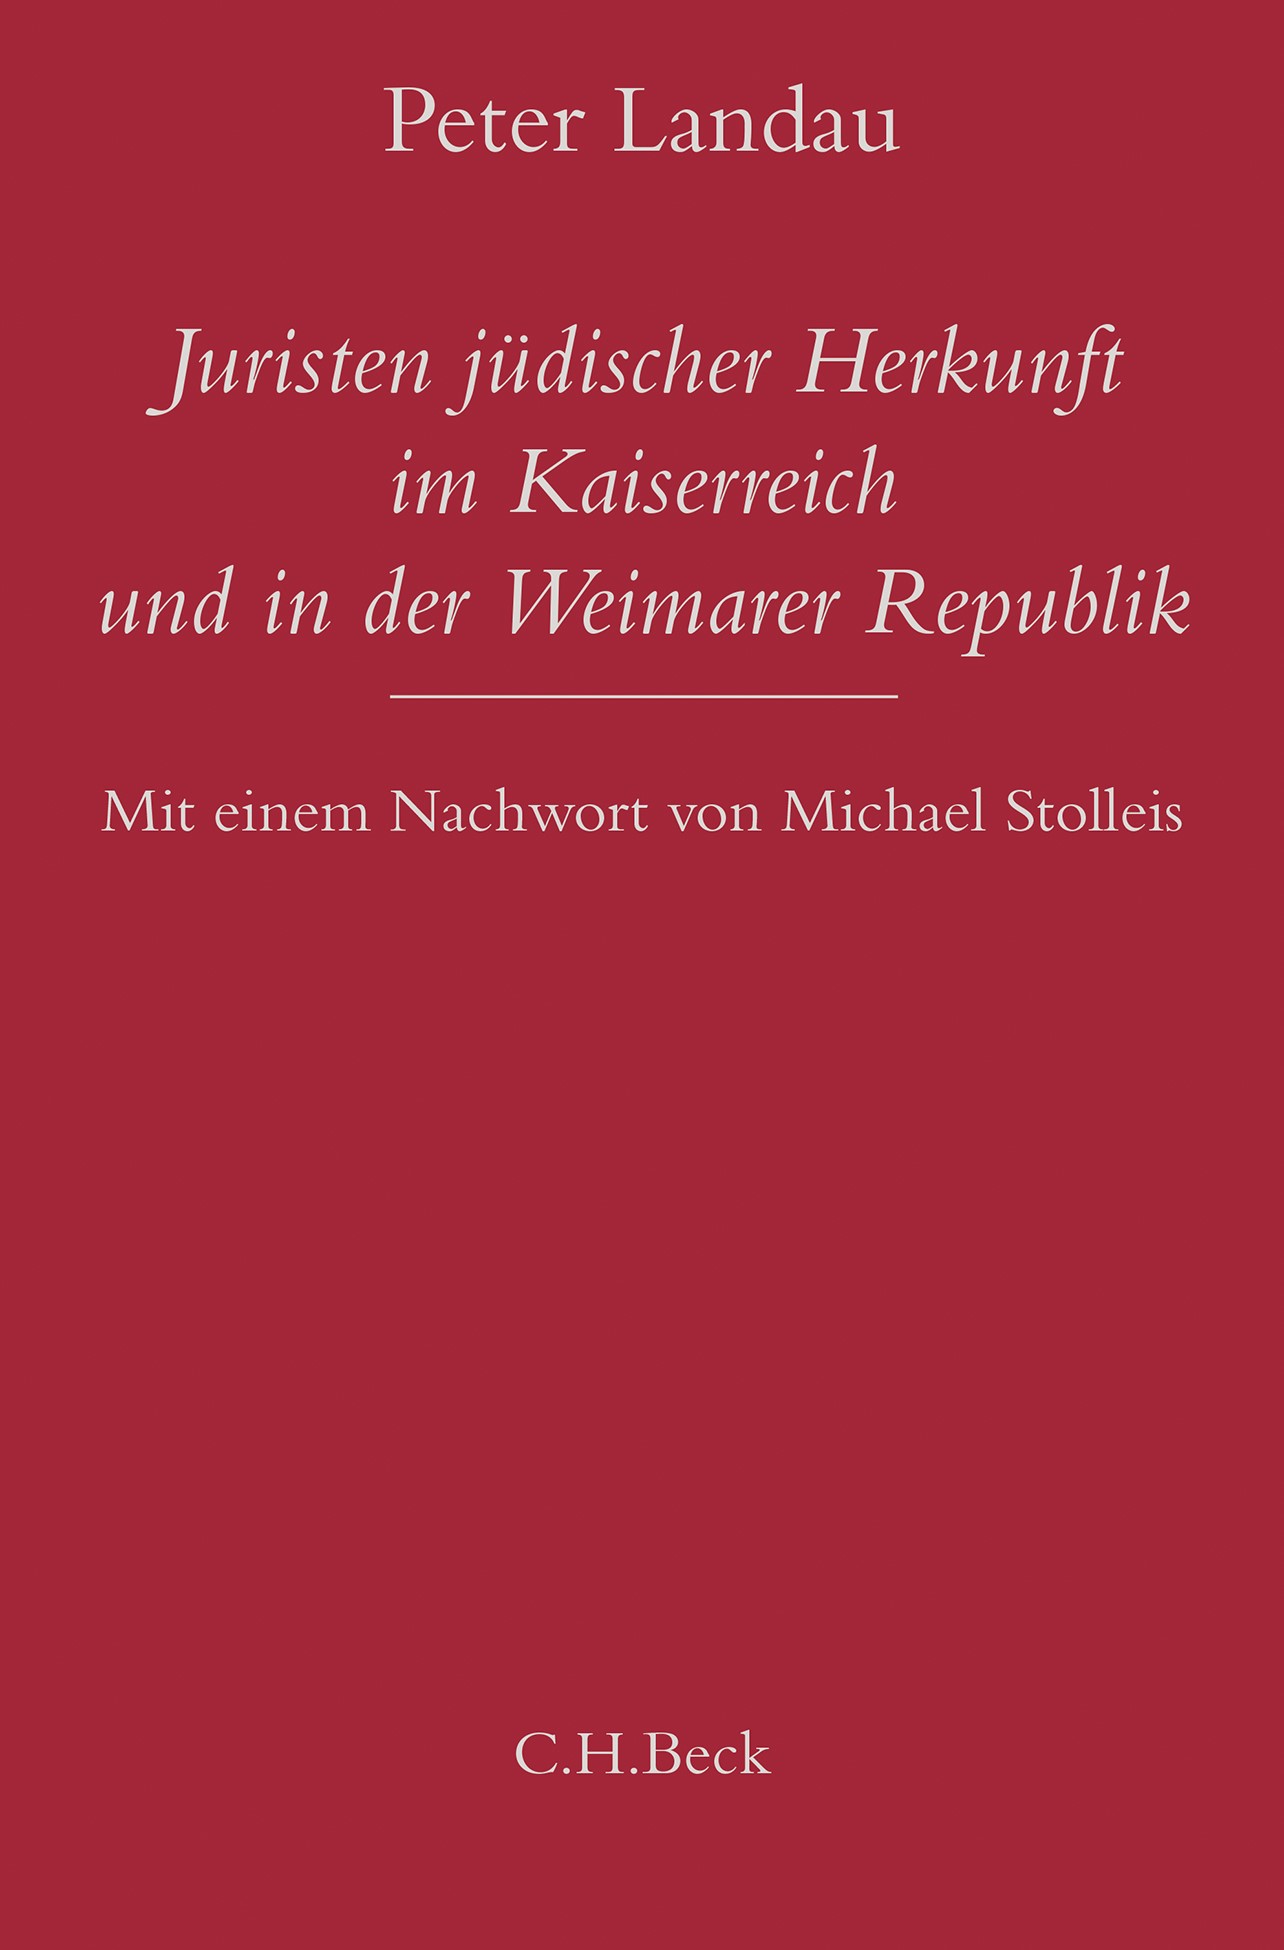 Cover: Landau, Peter, Juristen jüdischer Herkunft im Kaiserreich und in der Weimarer Republik